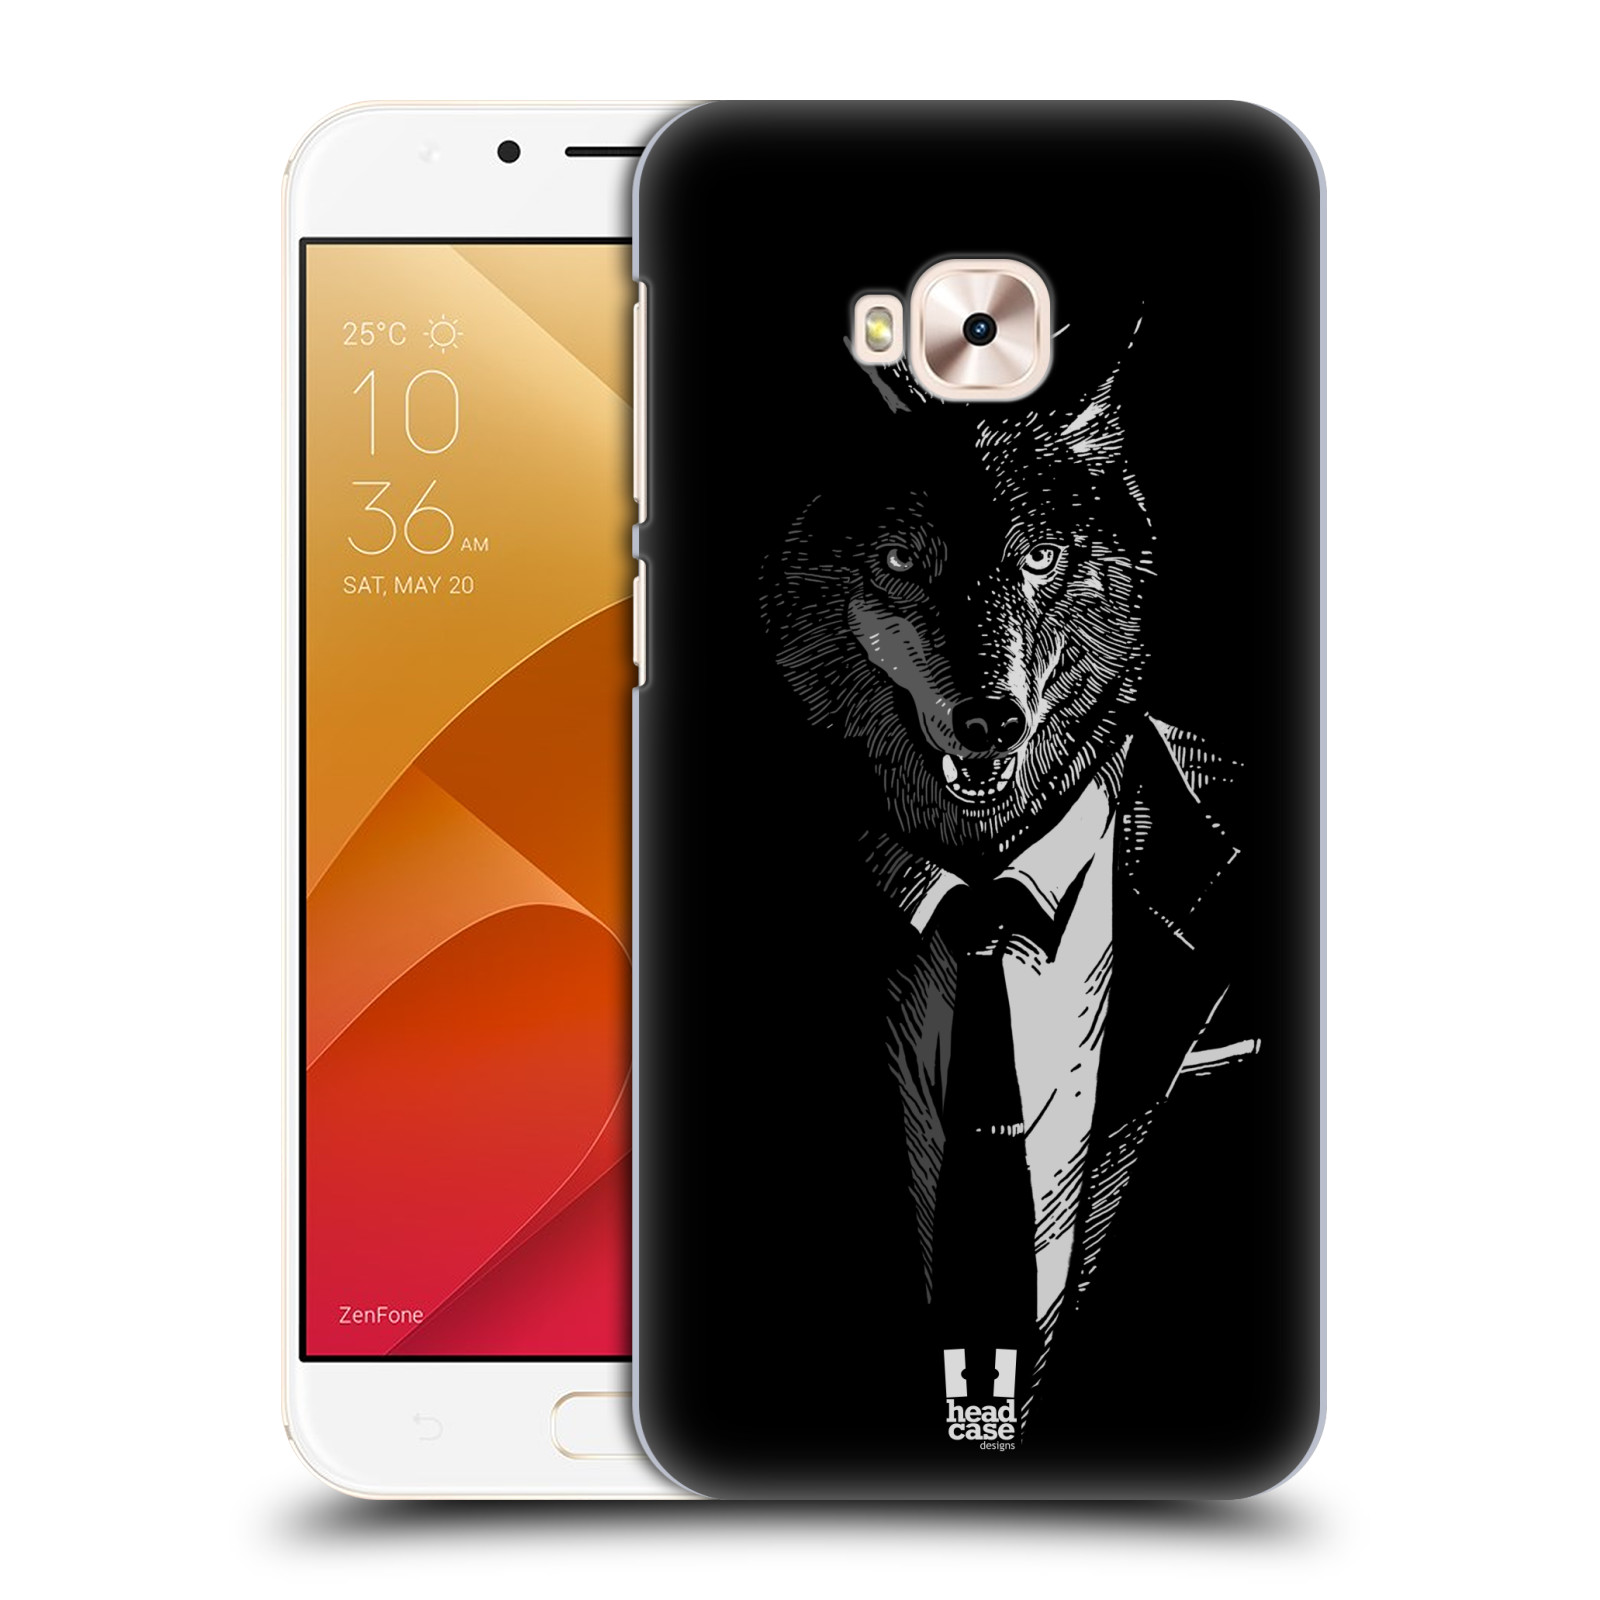 HEAD CASE plastový obal na mobil Asus Zenfone 4 Selfie Pro ZD552KL vzor Zvíře v obleku vlk